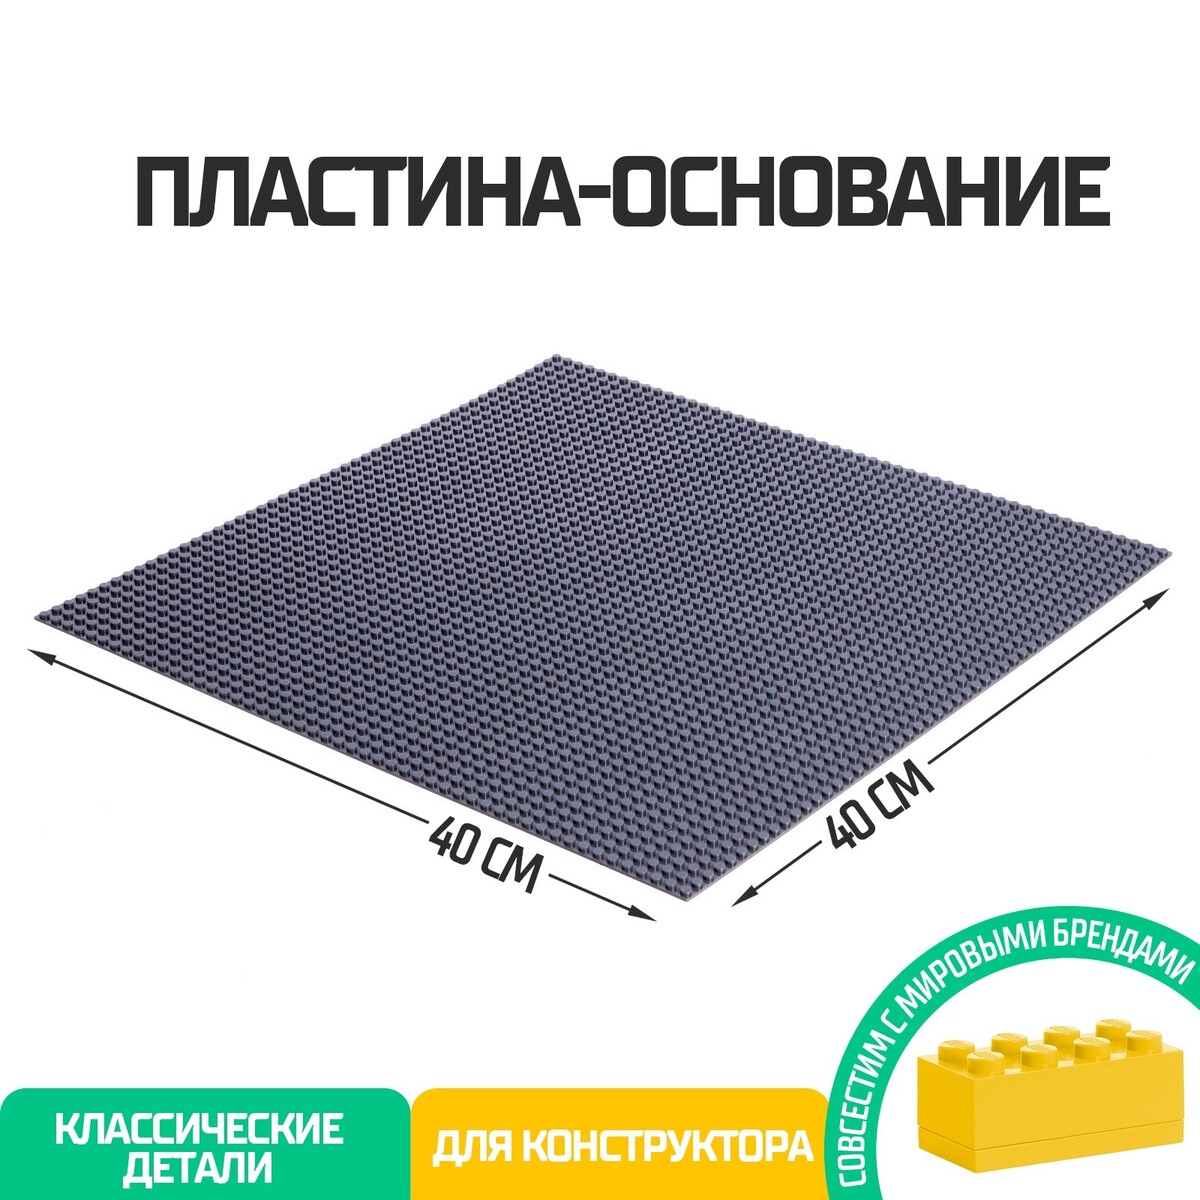 Пластина-основание для конструктора, 40 × 40 см, цвет серый пластина основание для конструктора 40 × 40 см серый